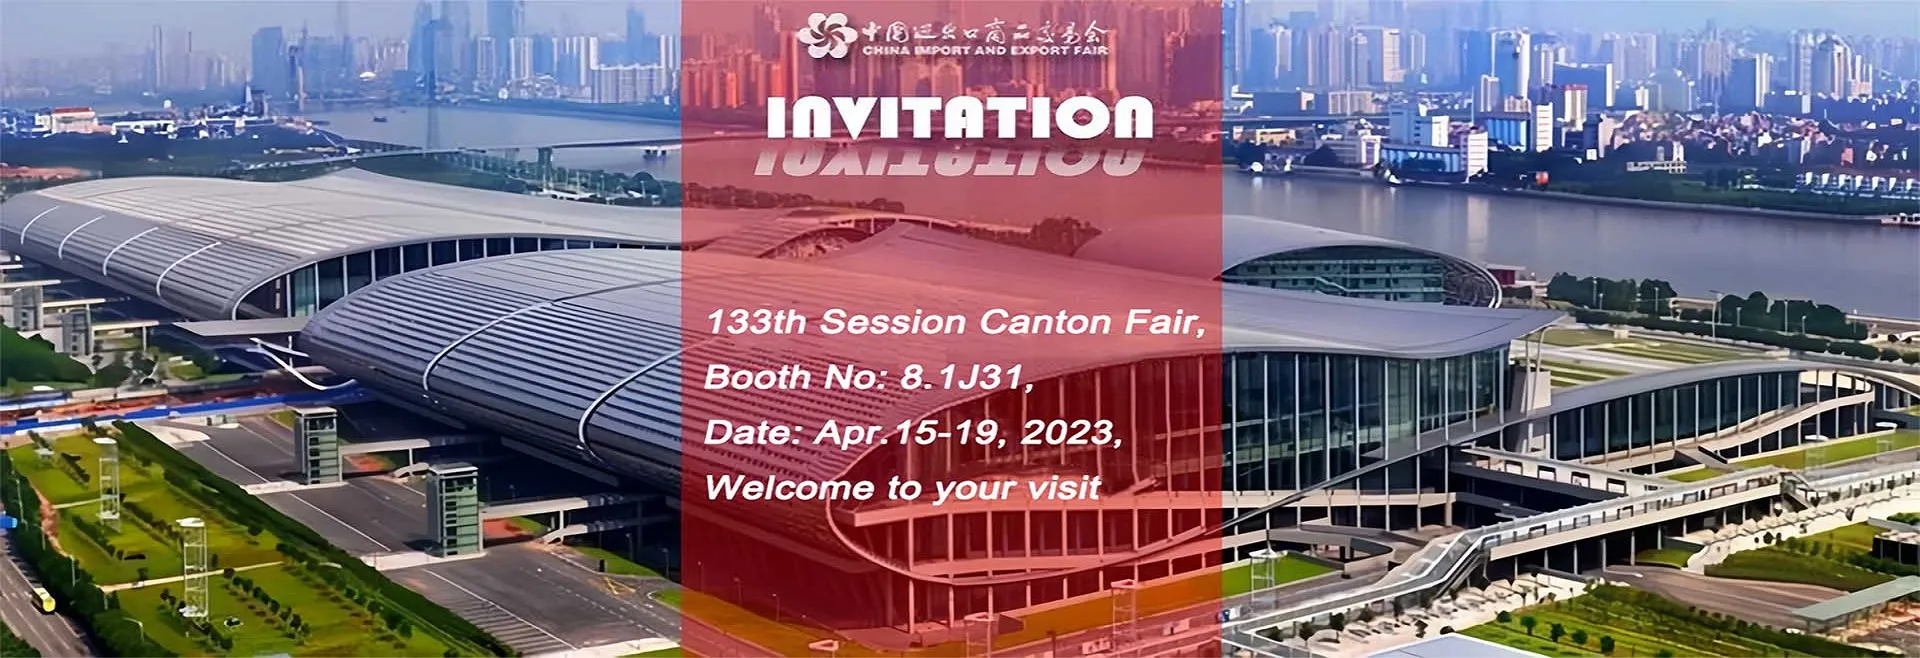 133th Session Canton Fair